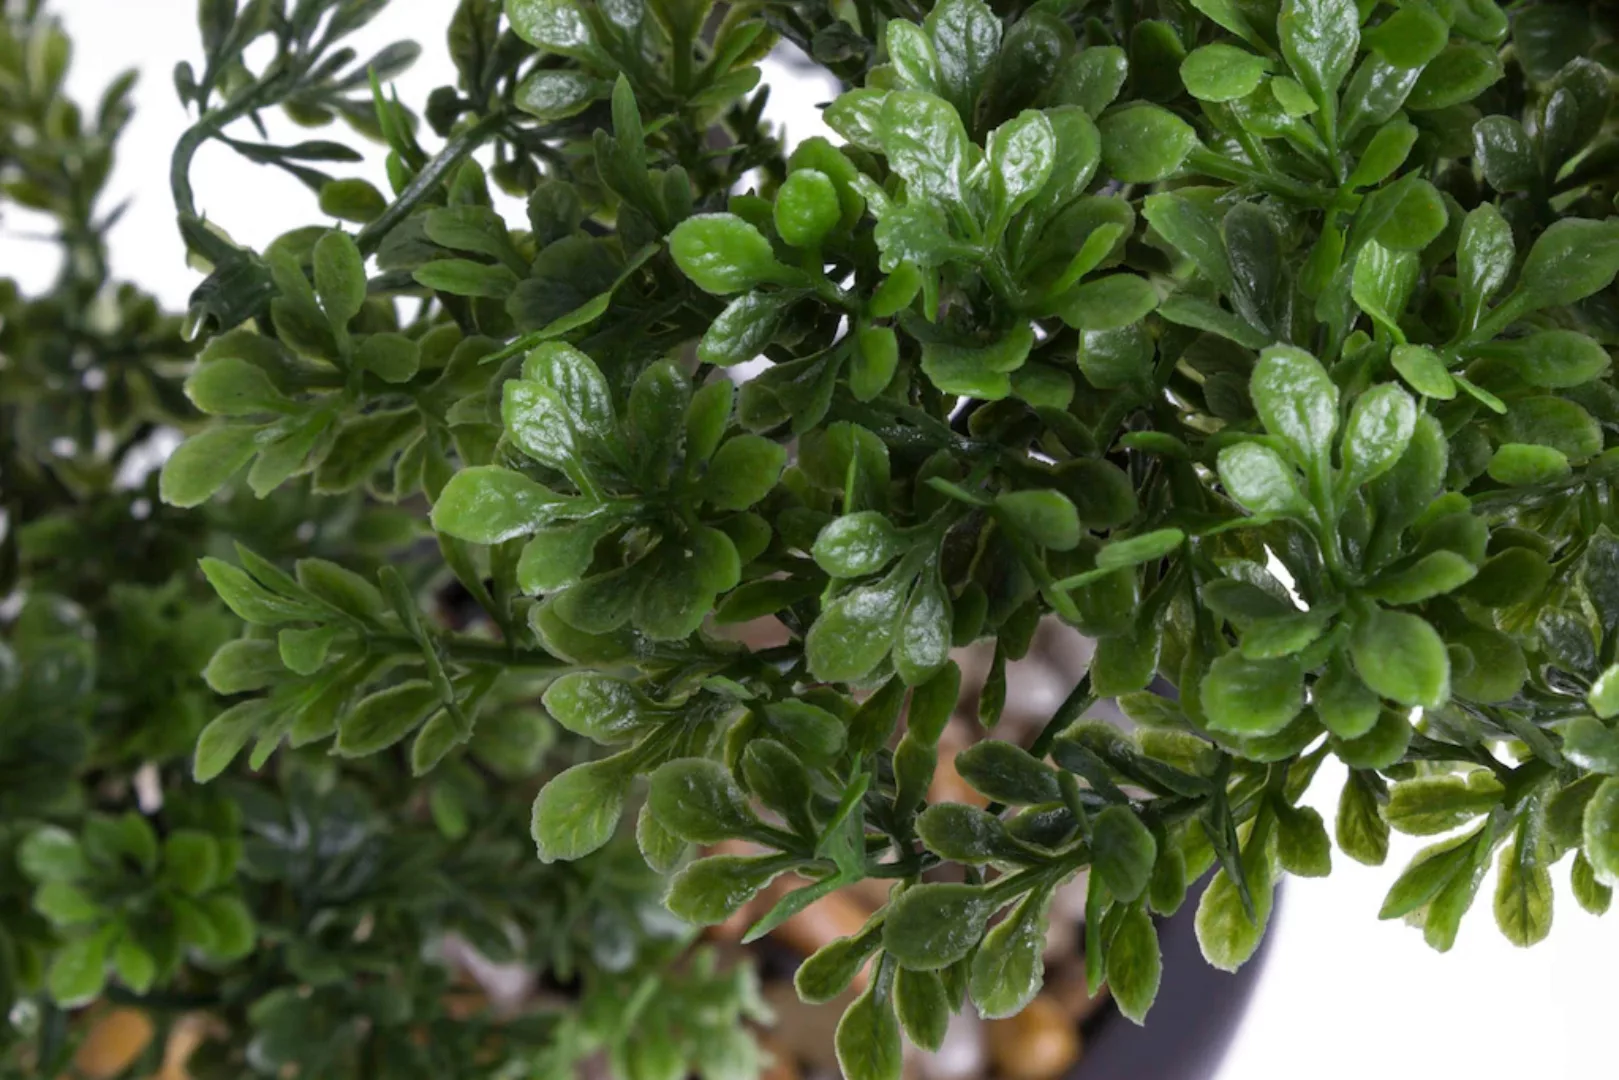 Emerald Kunstpflanze Bonsai Mini-Ficus Grün 32 cm 420002 Kunstpflanzen grün günstig online kaufen